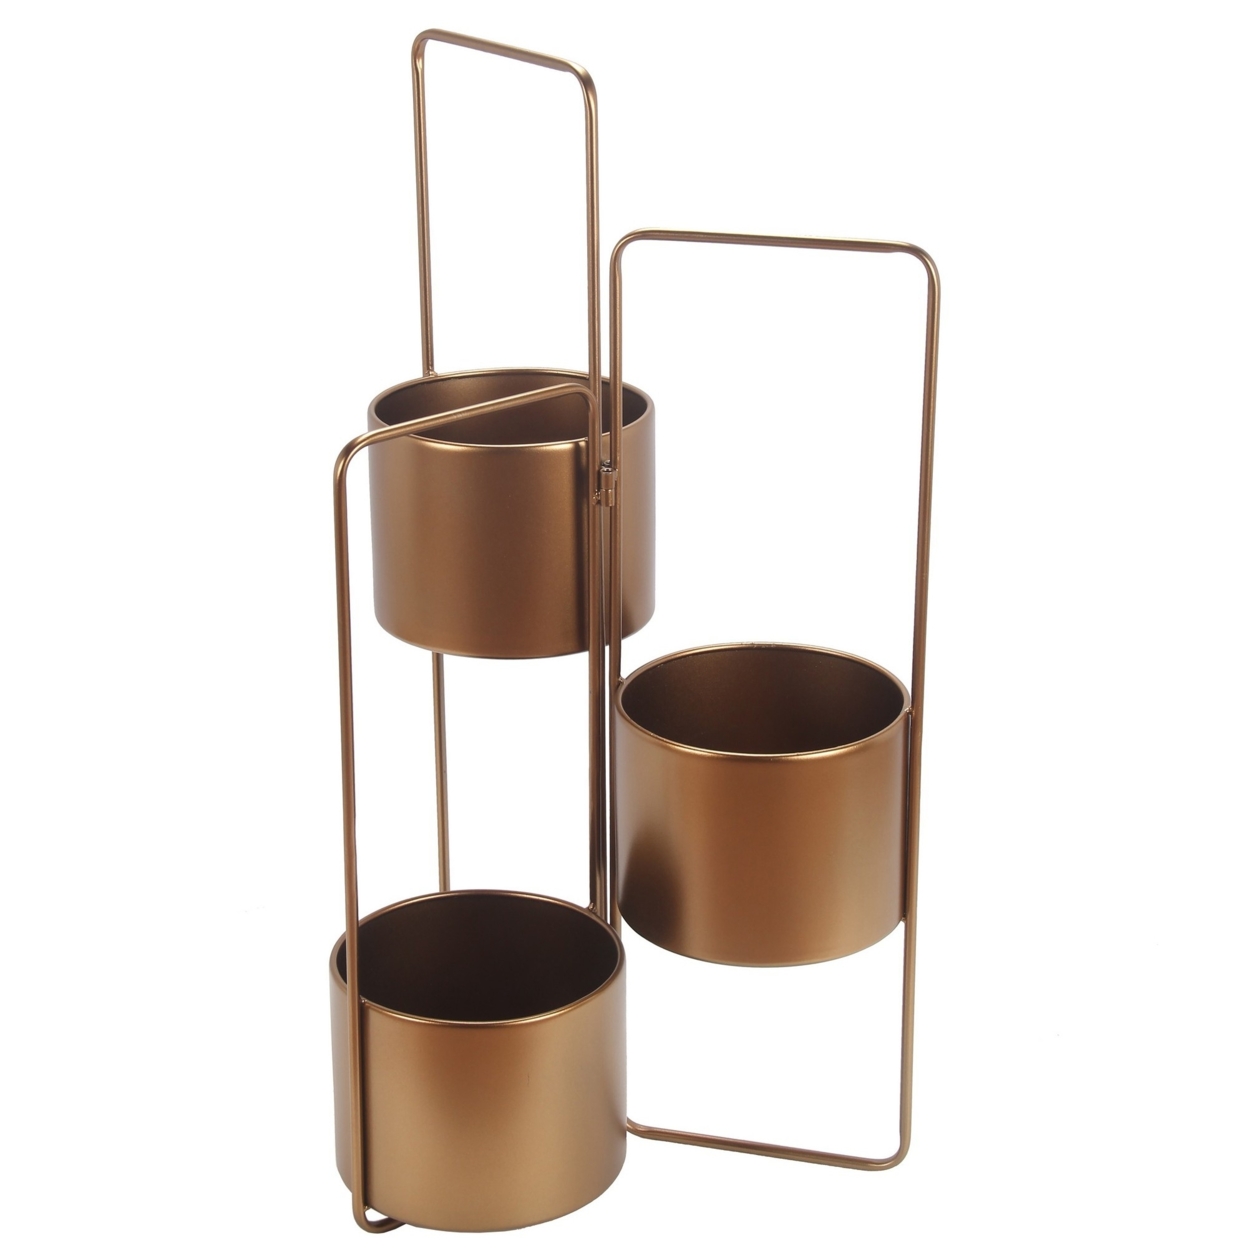 3 Way Metal Planter With Adjustable Hinges, Bronze- Saltoro Sherpi